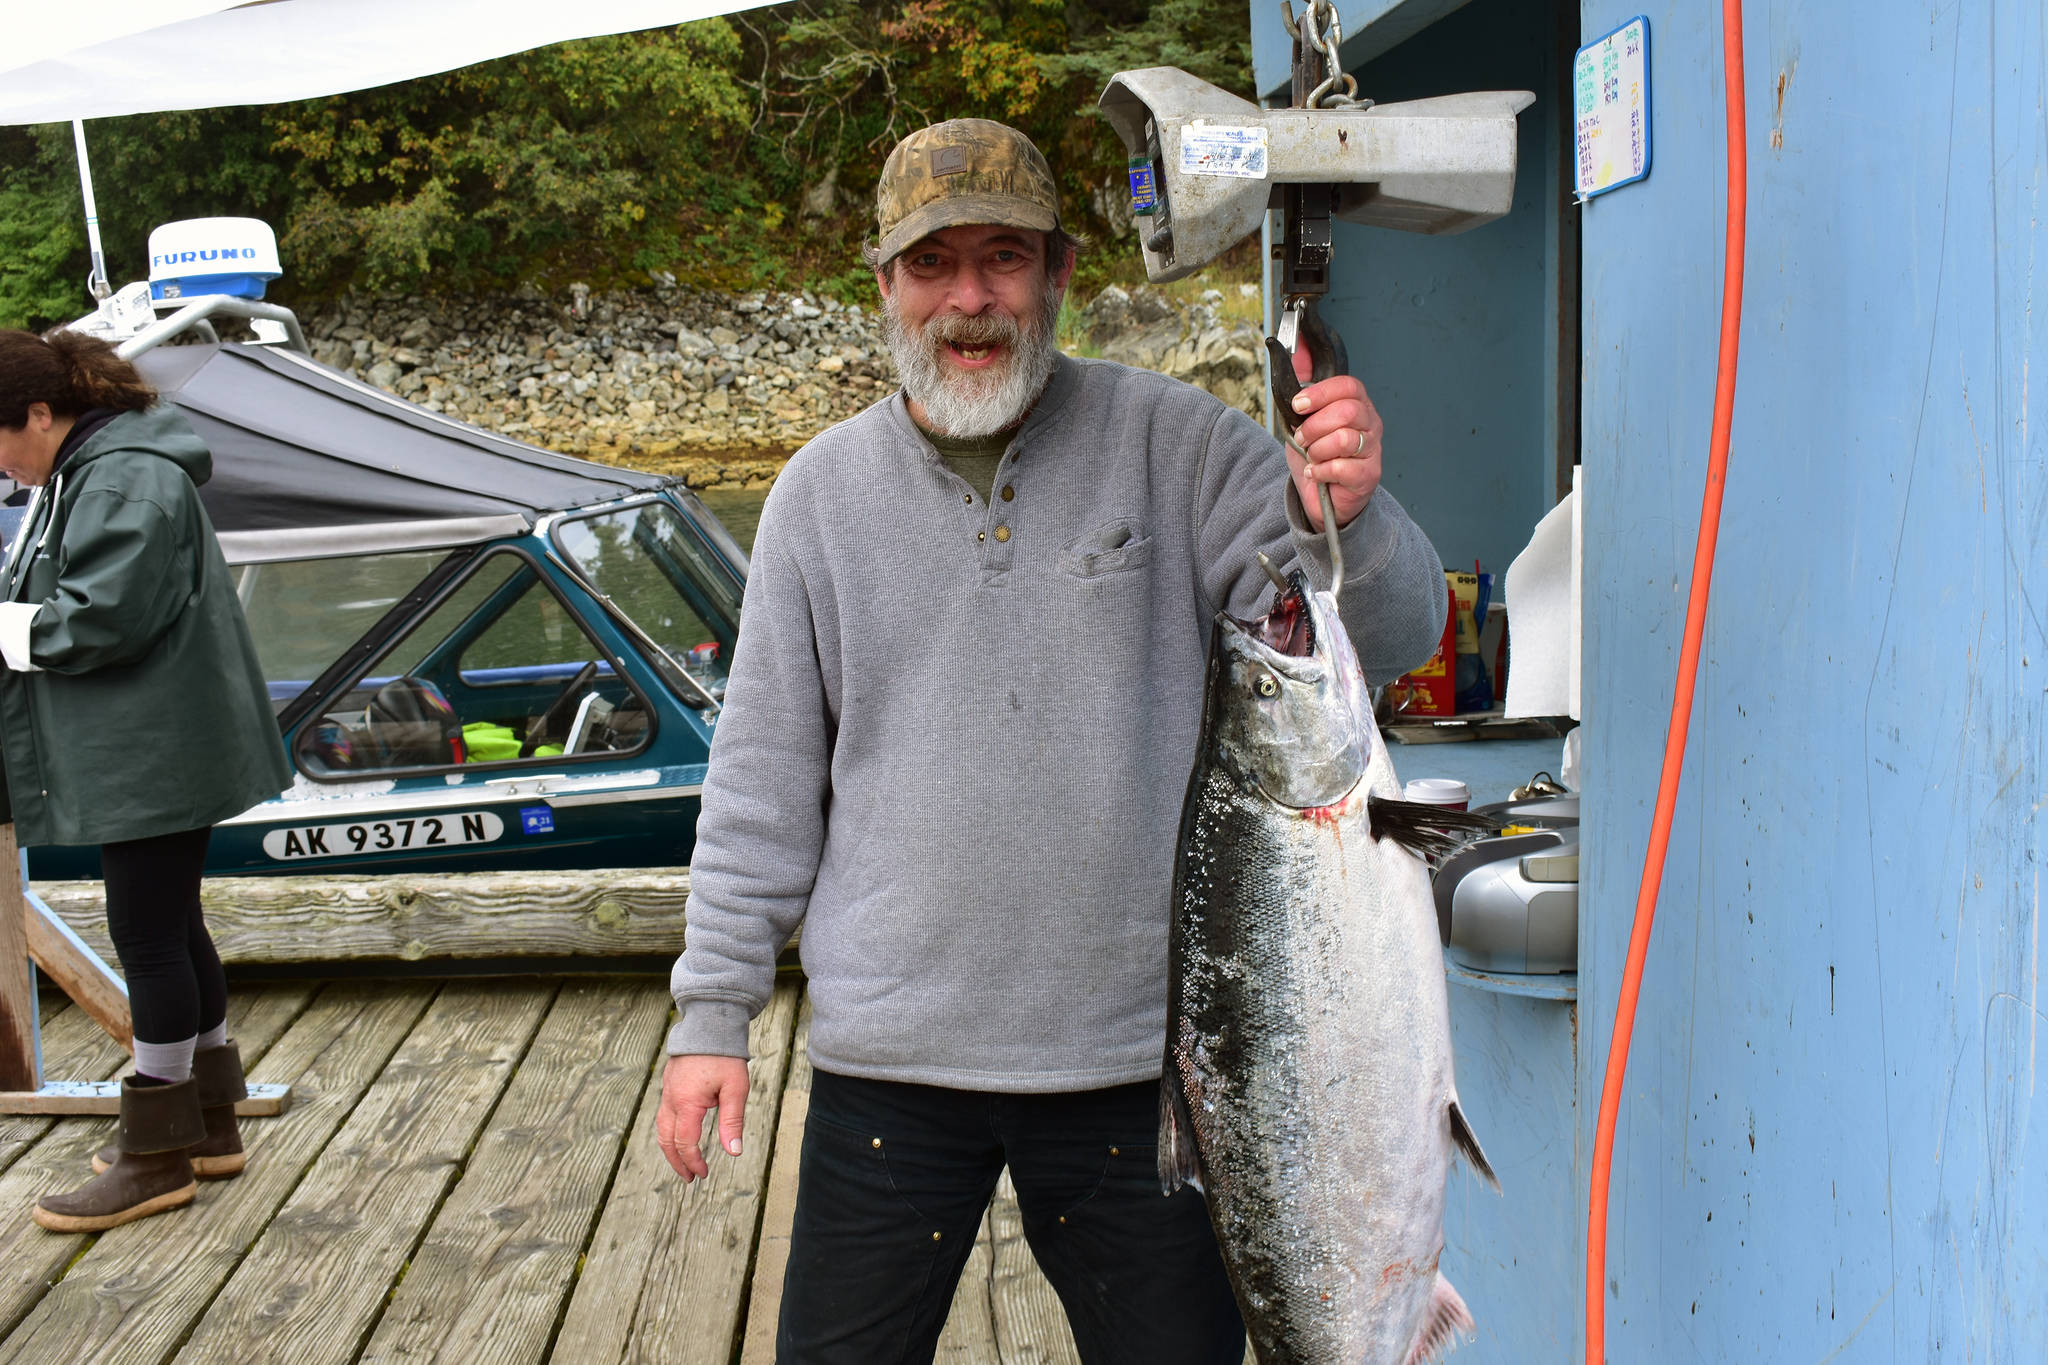 Twenty-four pounder wins 2019 Salmon Derby